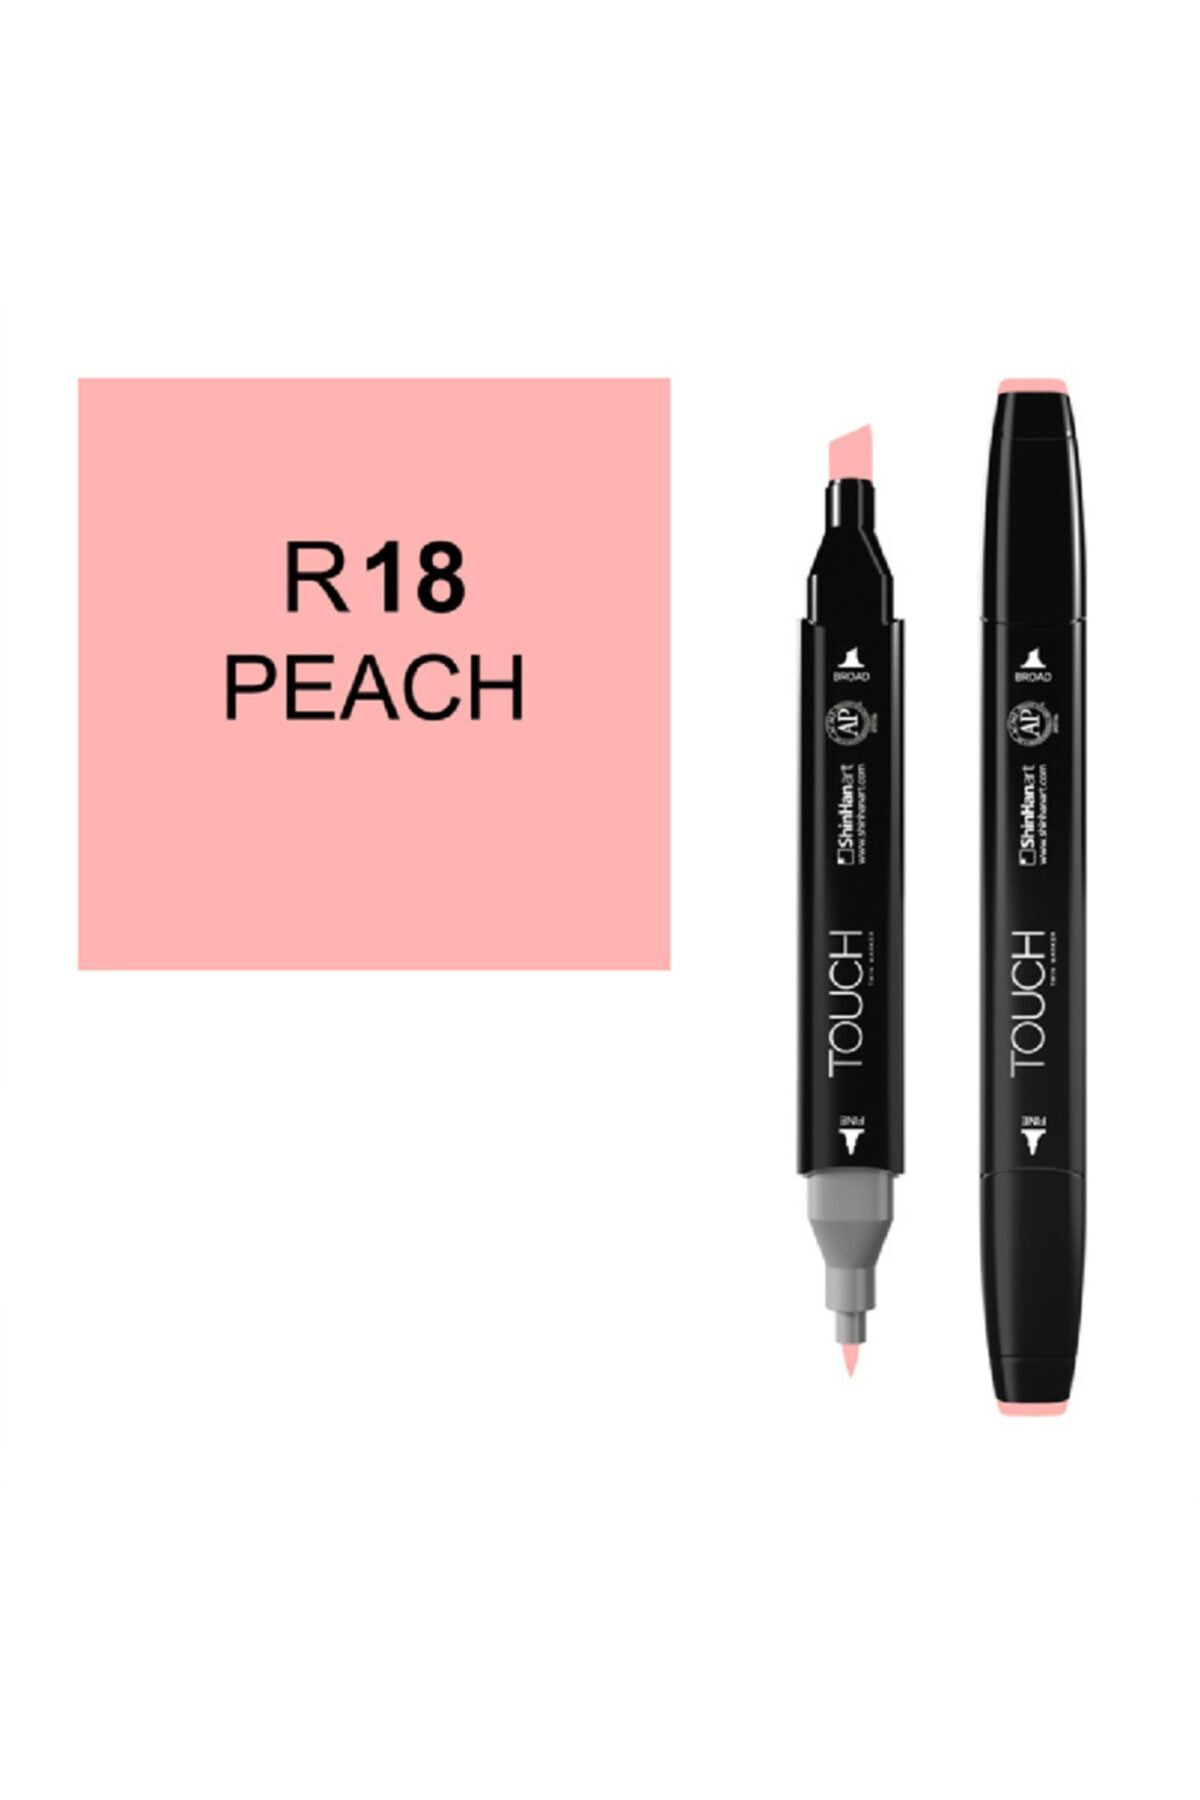 Ponart Touch Twin R18 Peach Marker Sh1110018